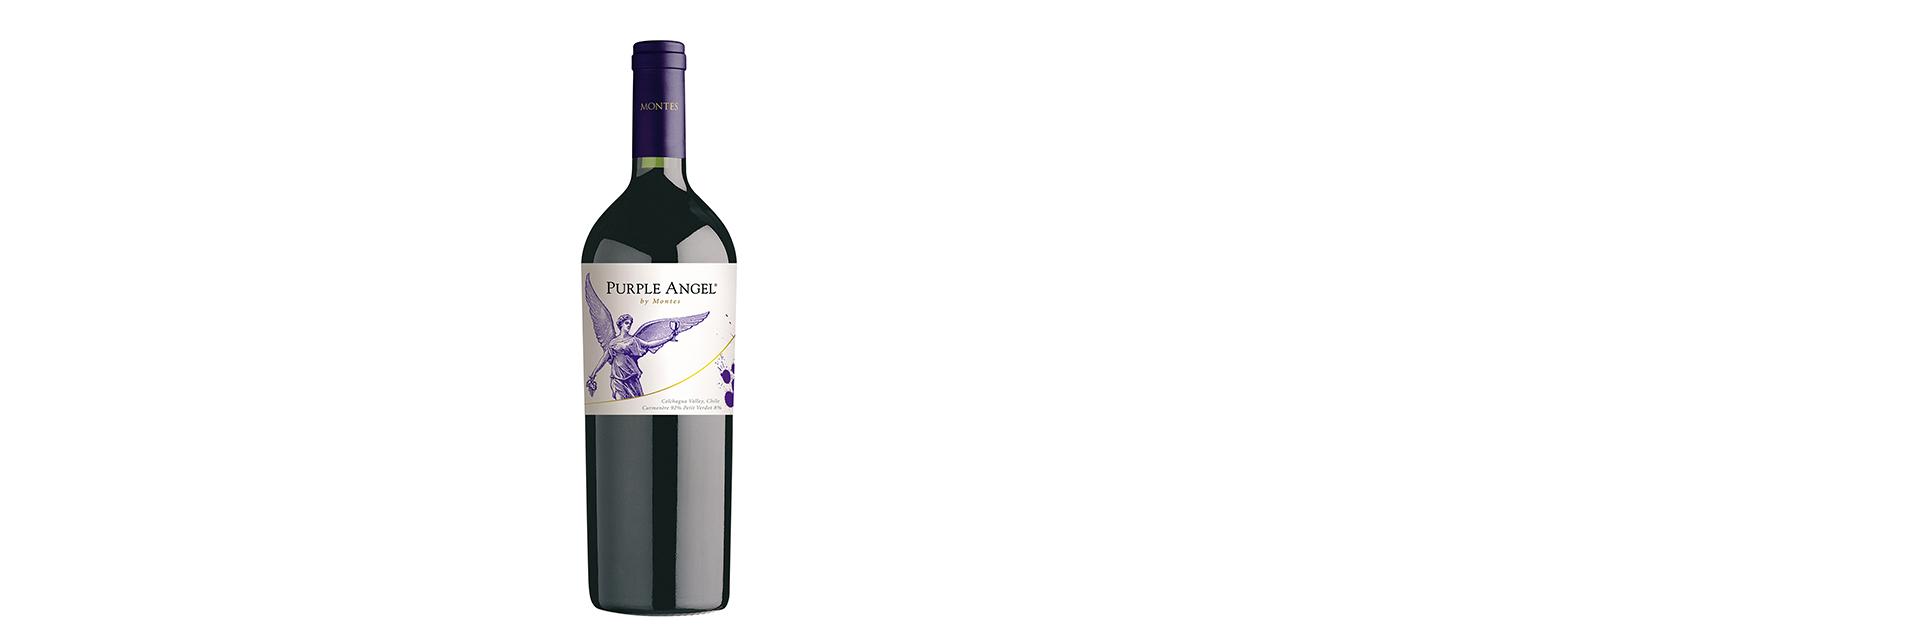 Rượu vang Montes Purple Angel